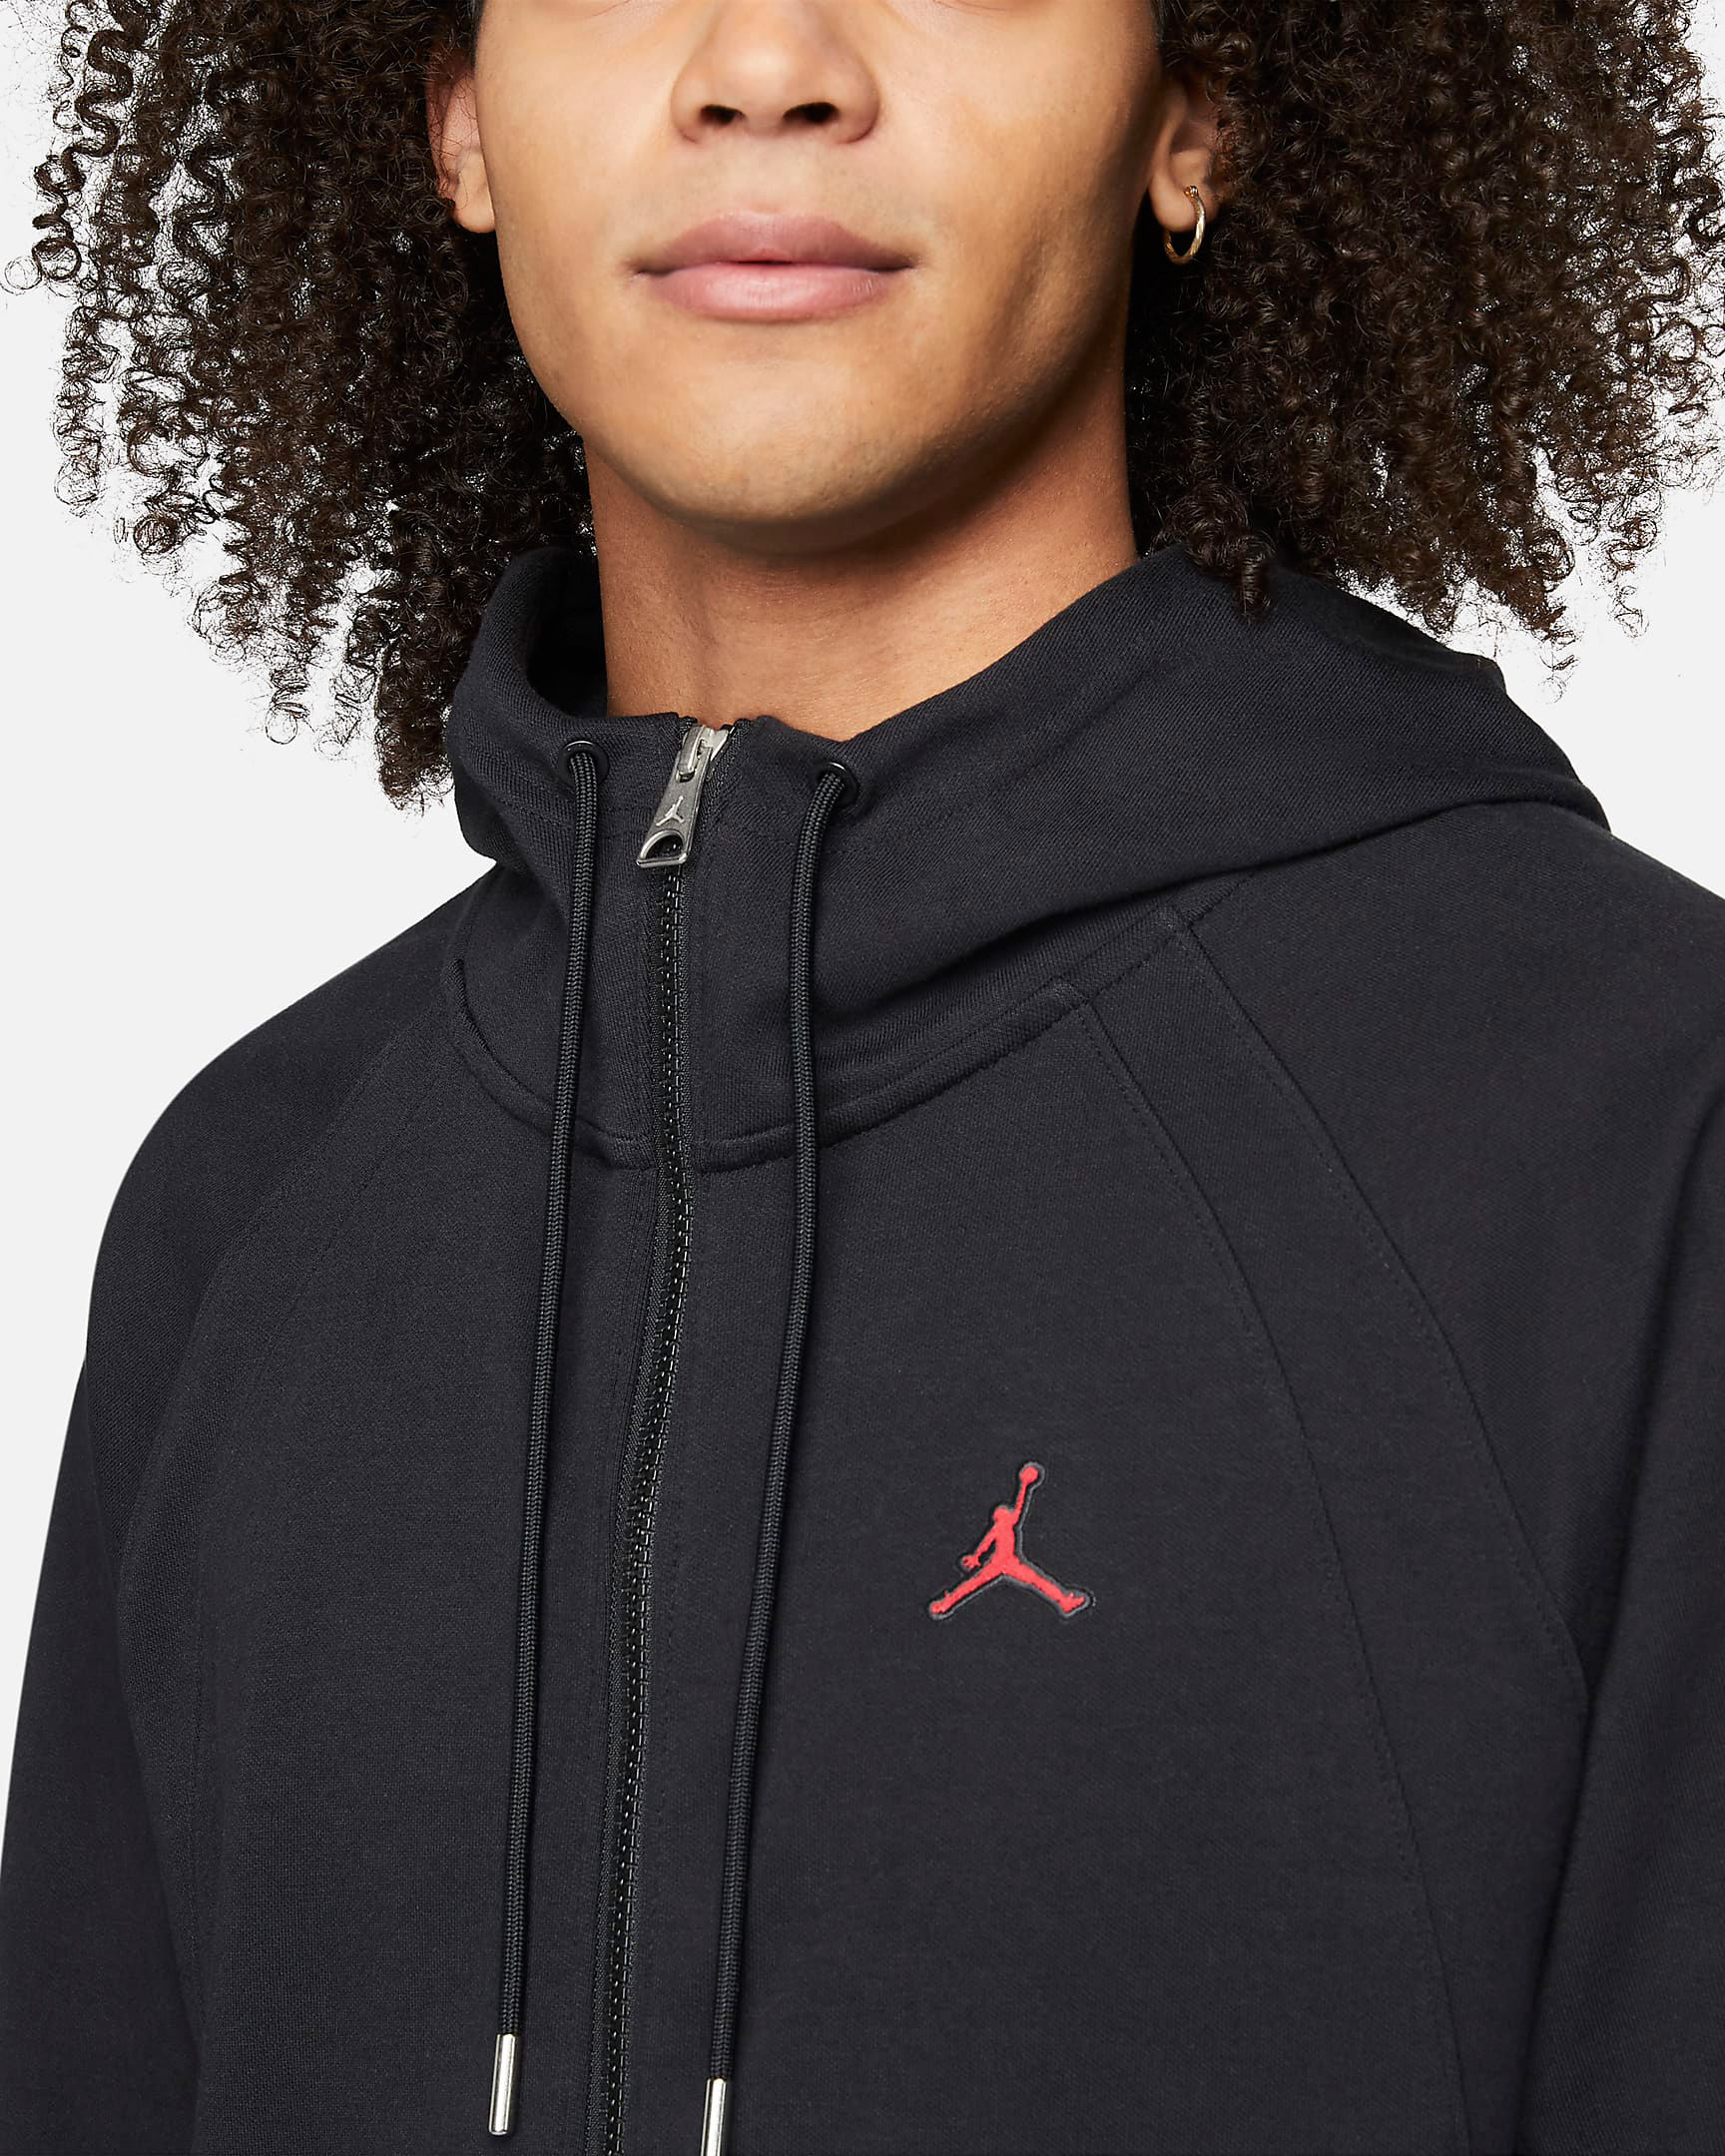 Jordan Essentials Warmup Jacket in Black Gym Red